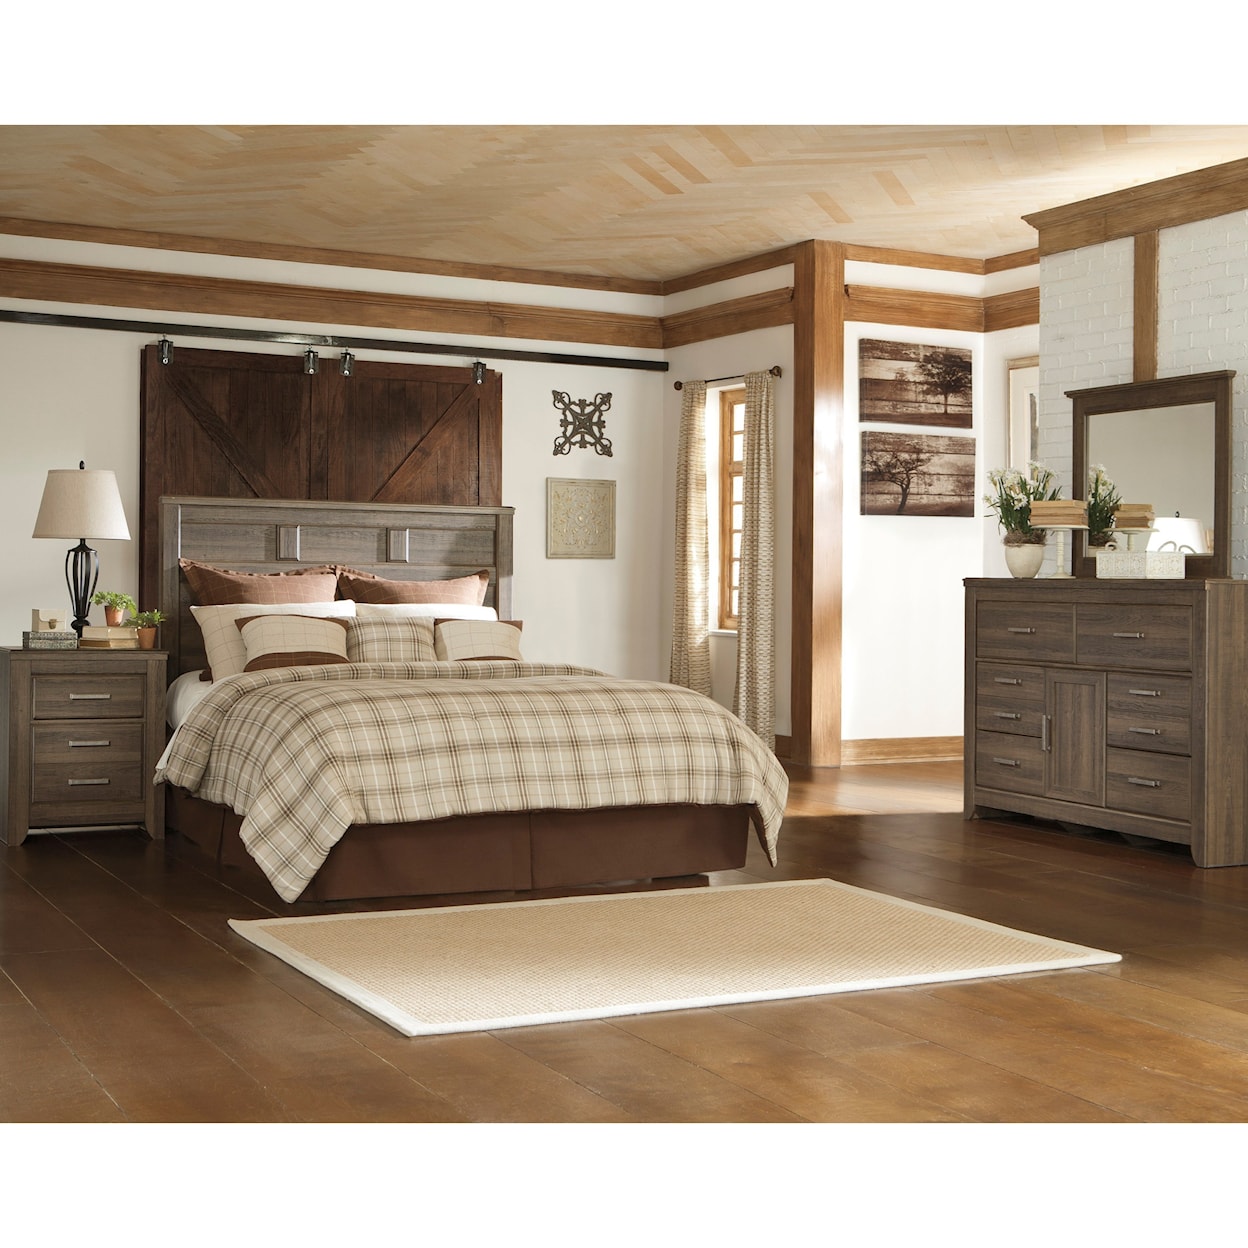 Ashley Furniture Signature Design Juararo Queen Bedroom Group